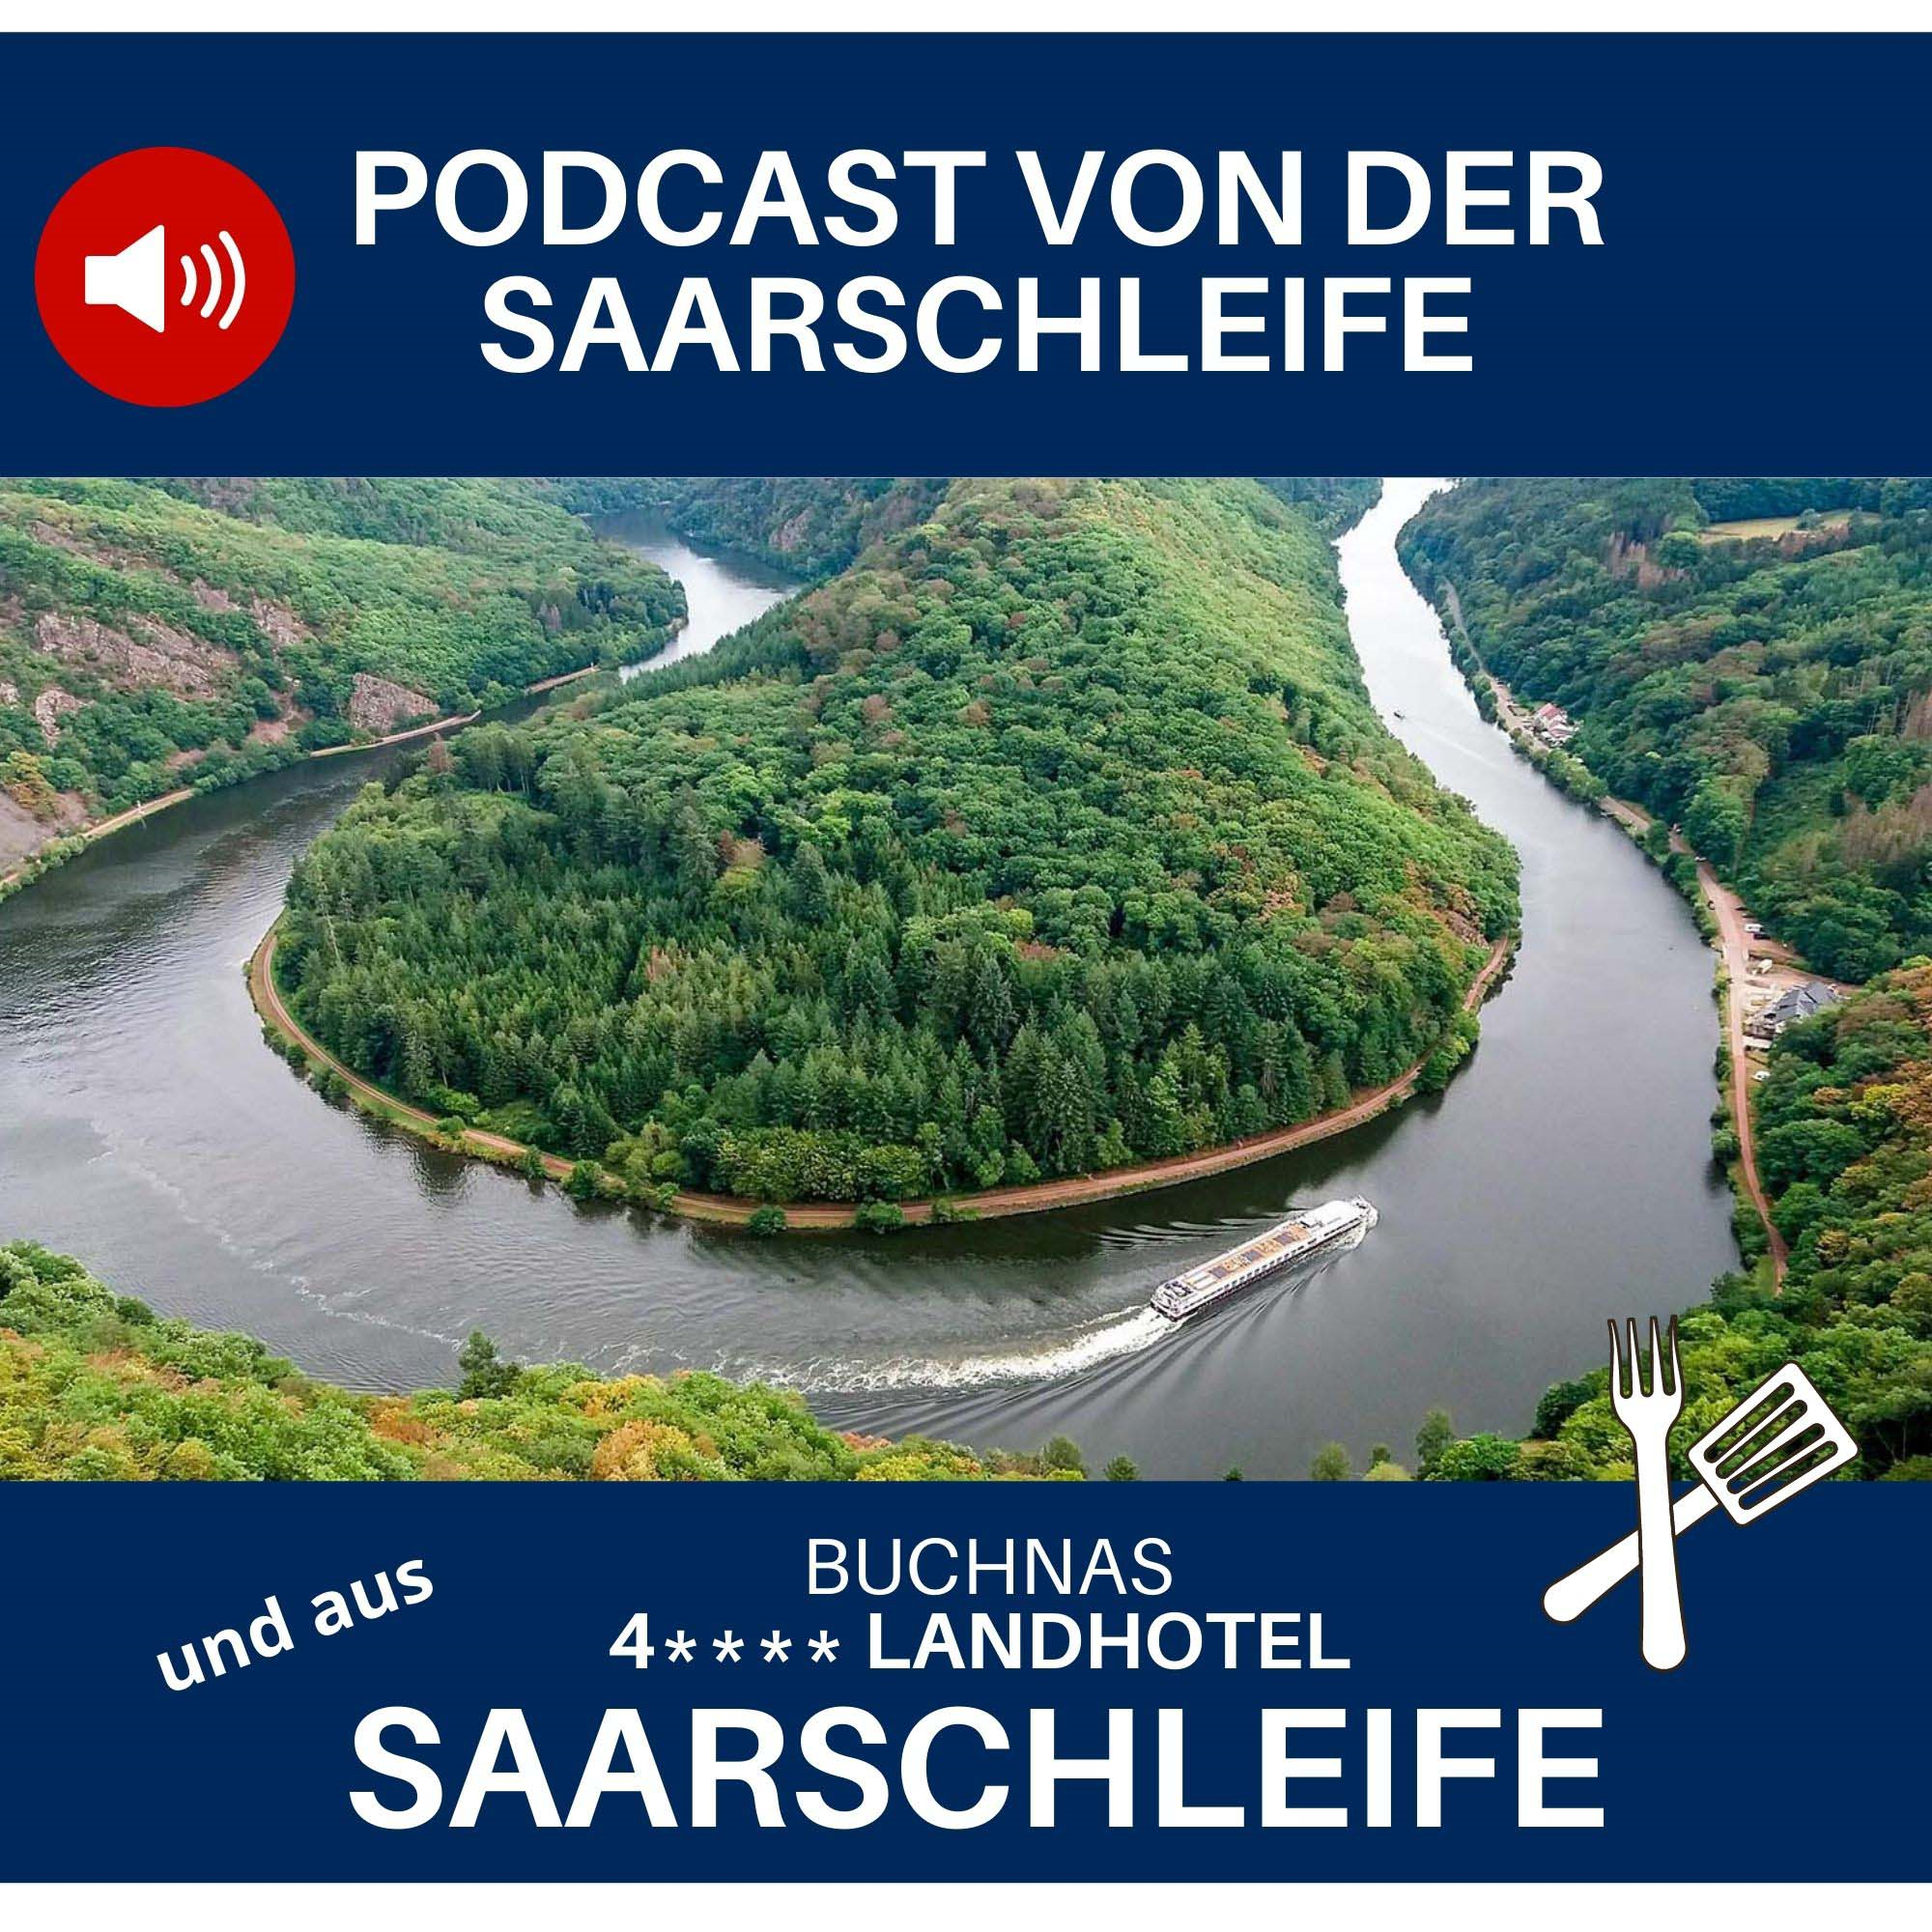 #34 Podcast von der Saarschleife aus Buchnas Landhotel Saarschleife im Saarland - burst 01